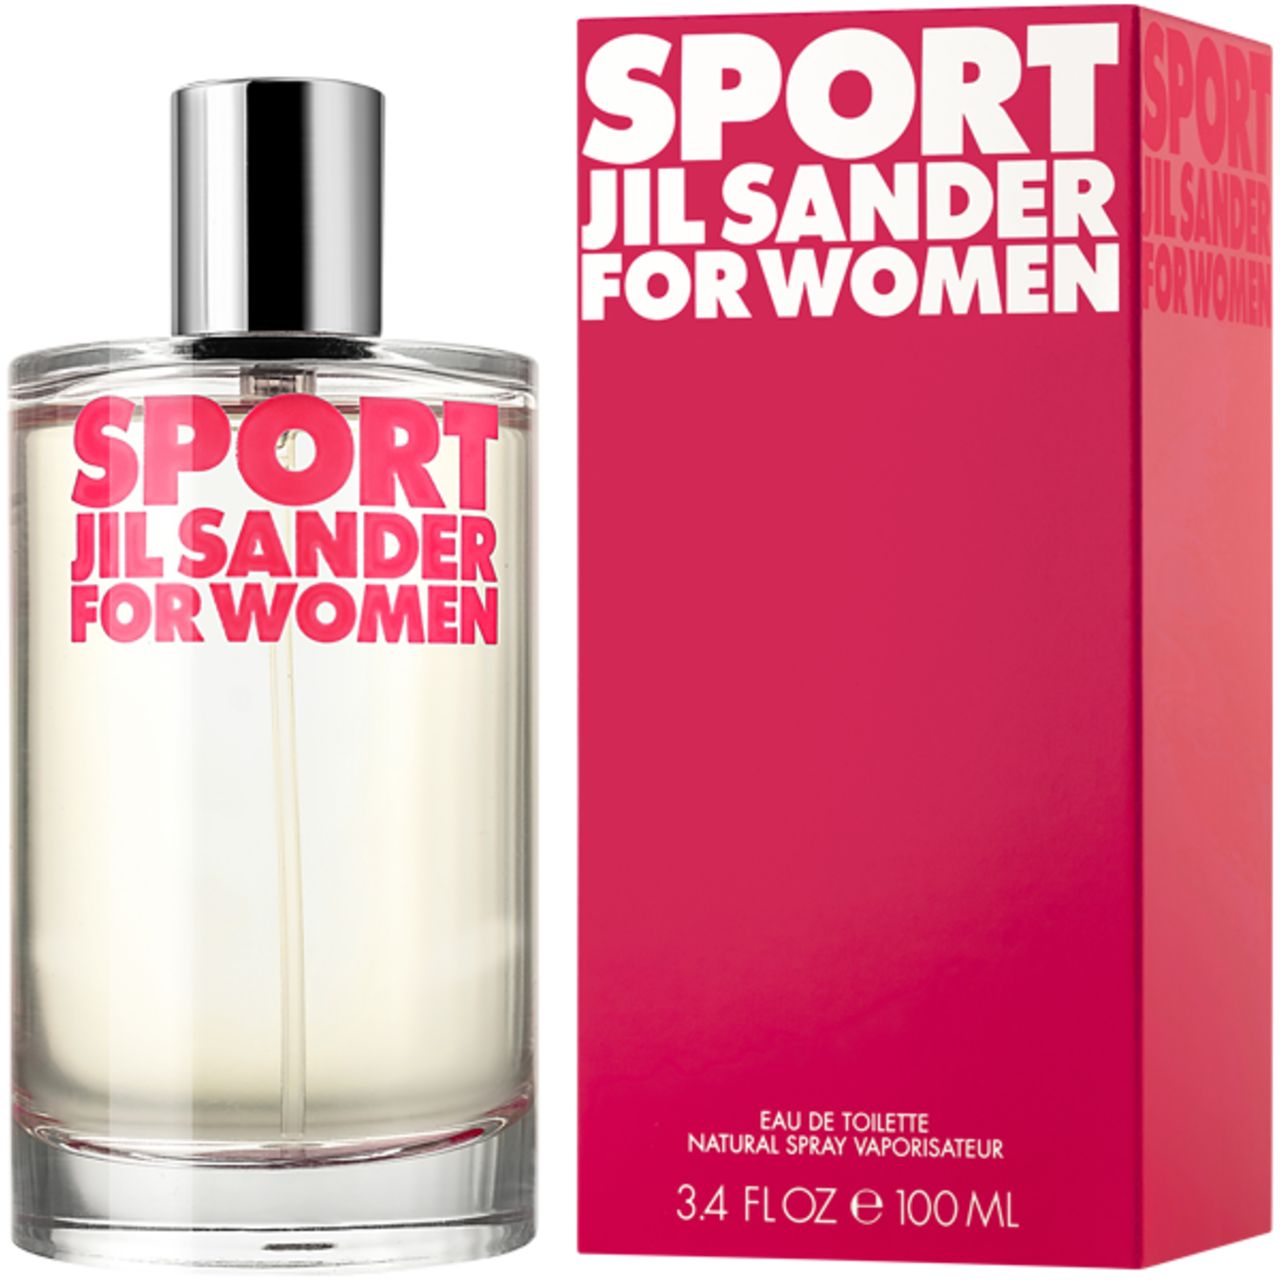 Jil Sander, Sport For Women E.d.T. Nat. Spray